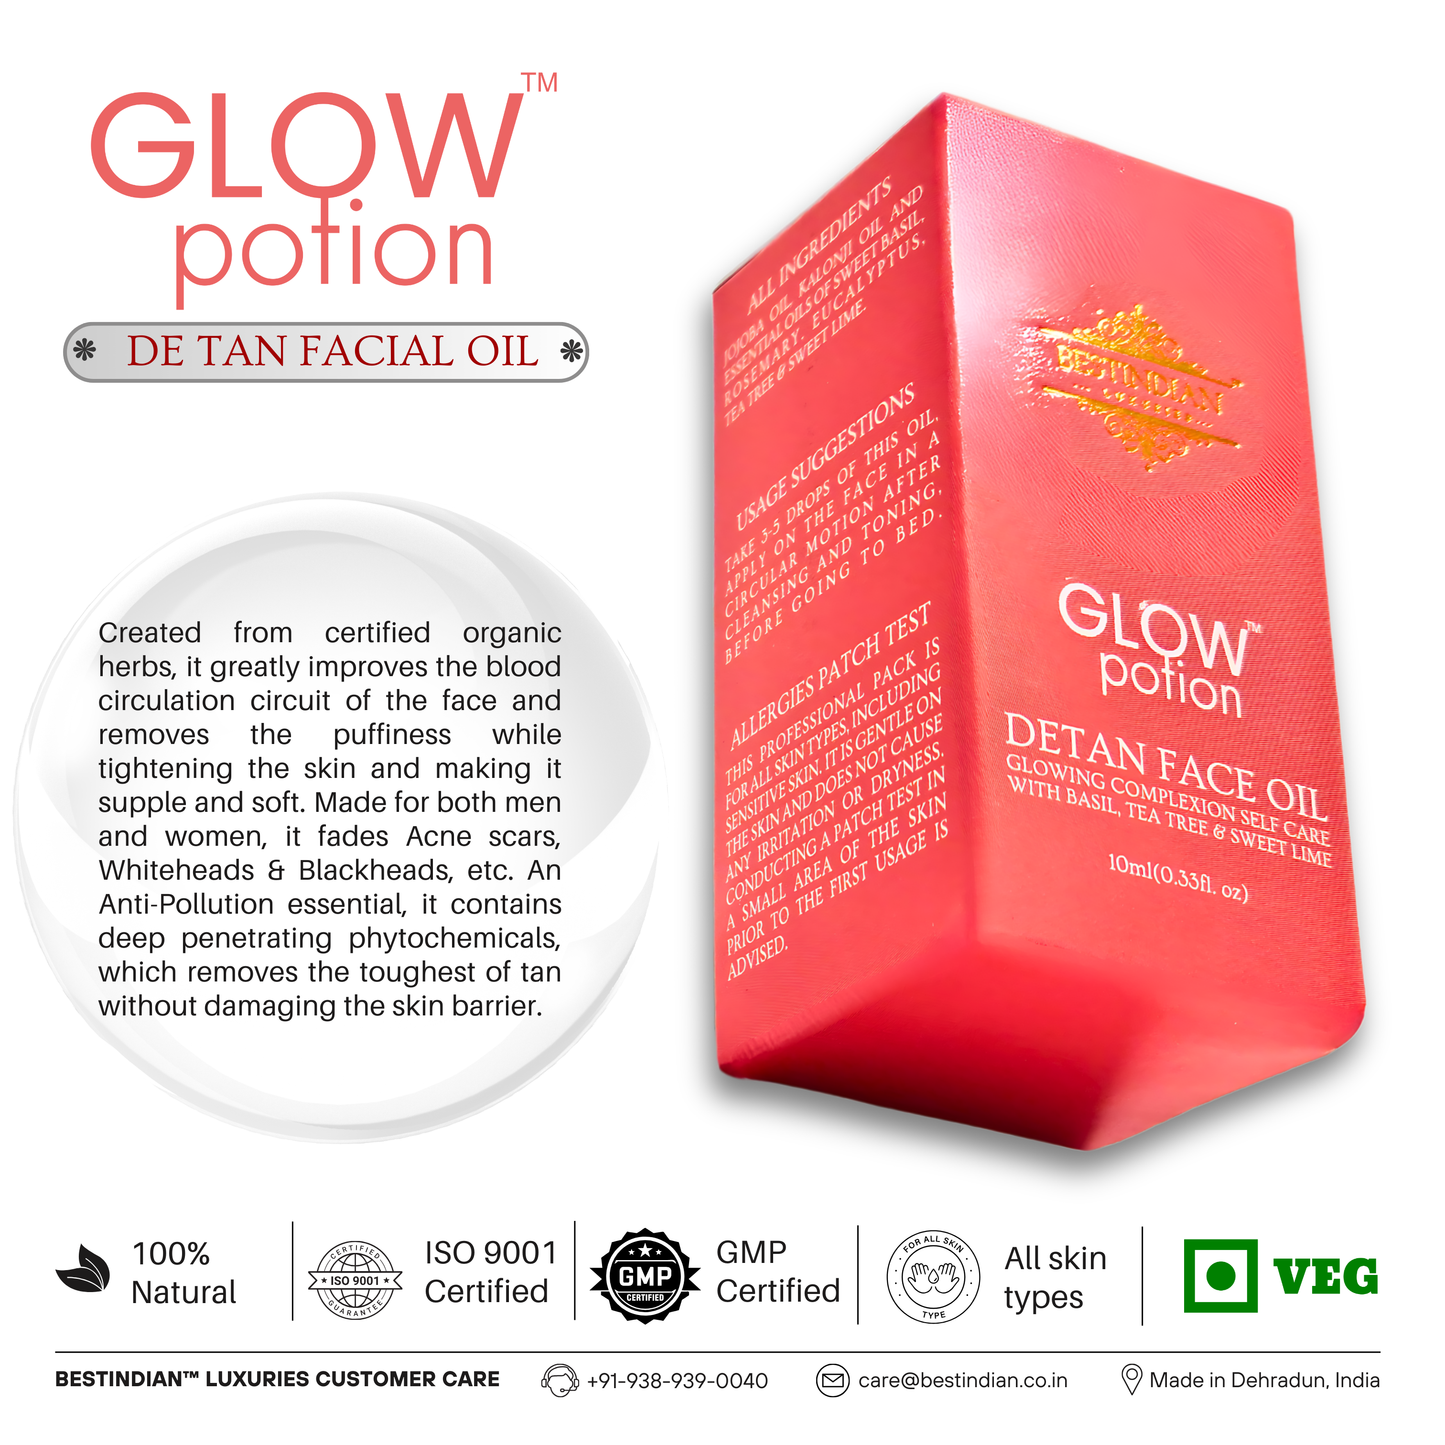 GlowPotion™ Detan Face Oil